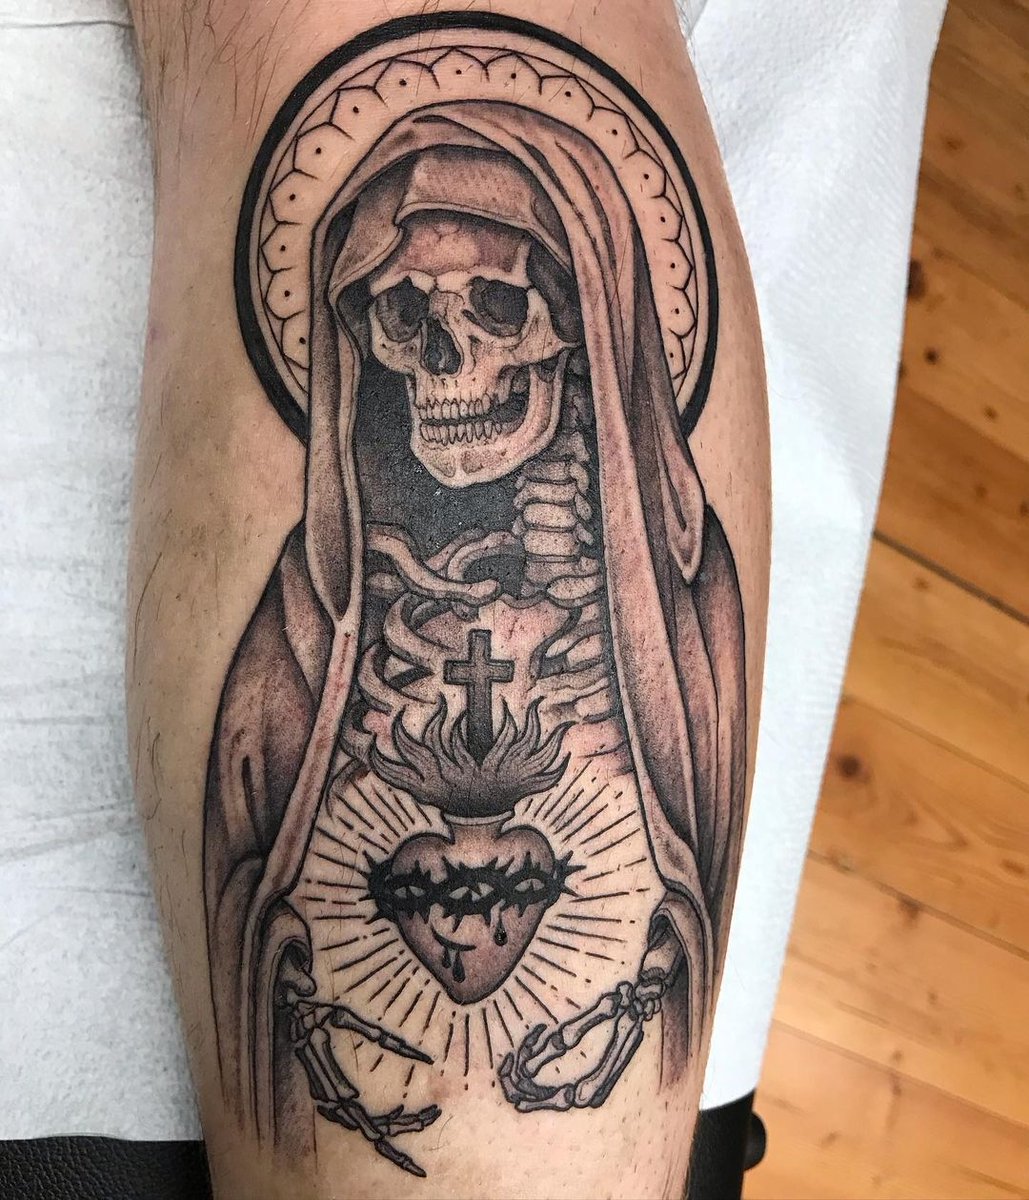 sacred heart of mary tattoo